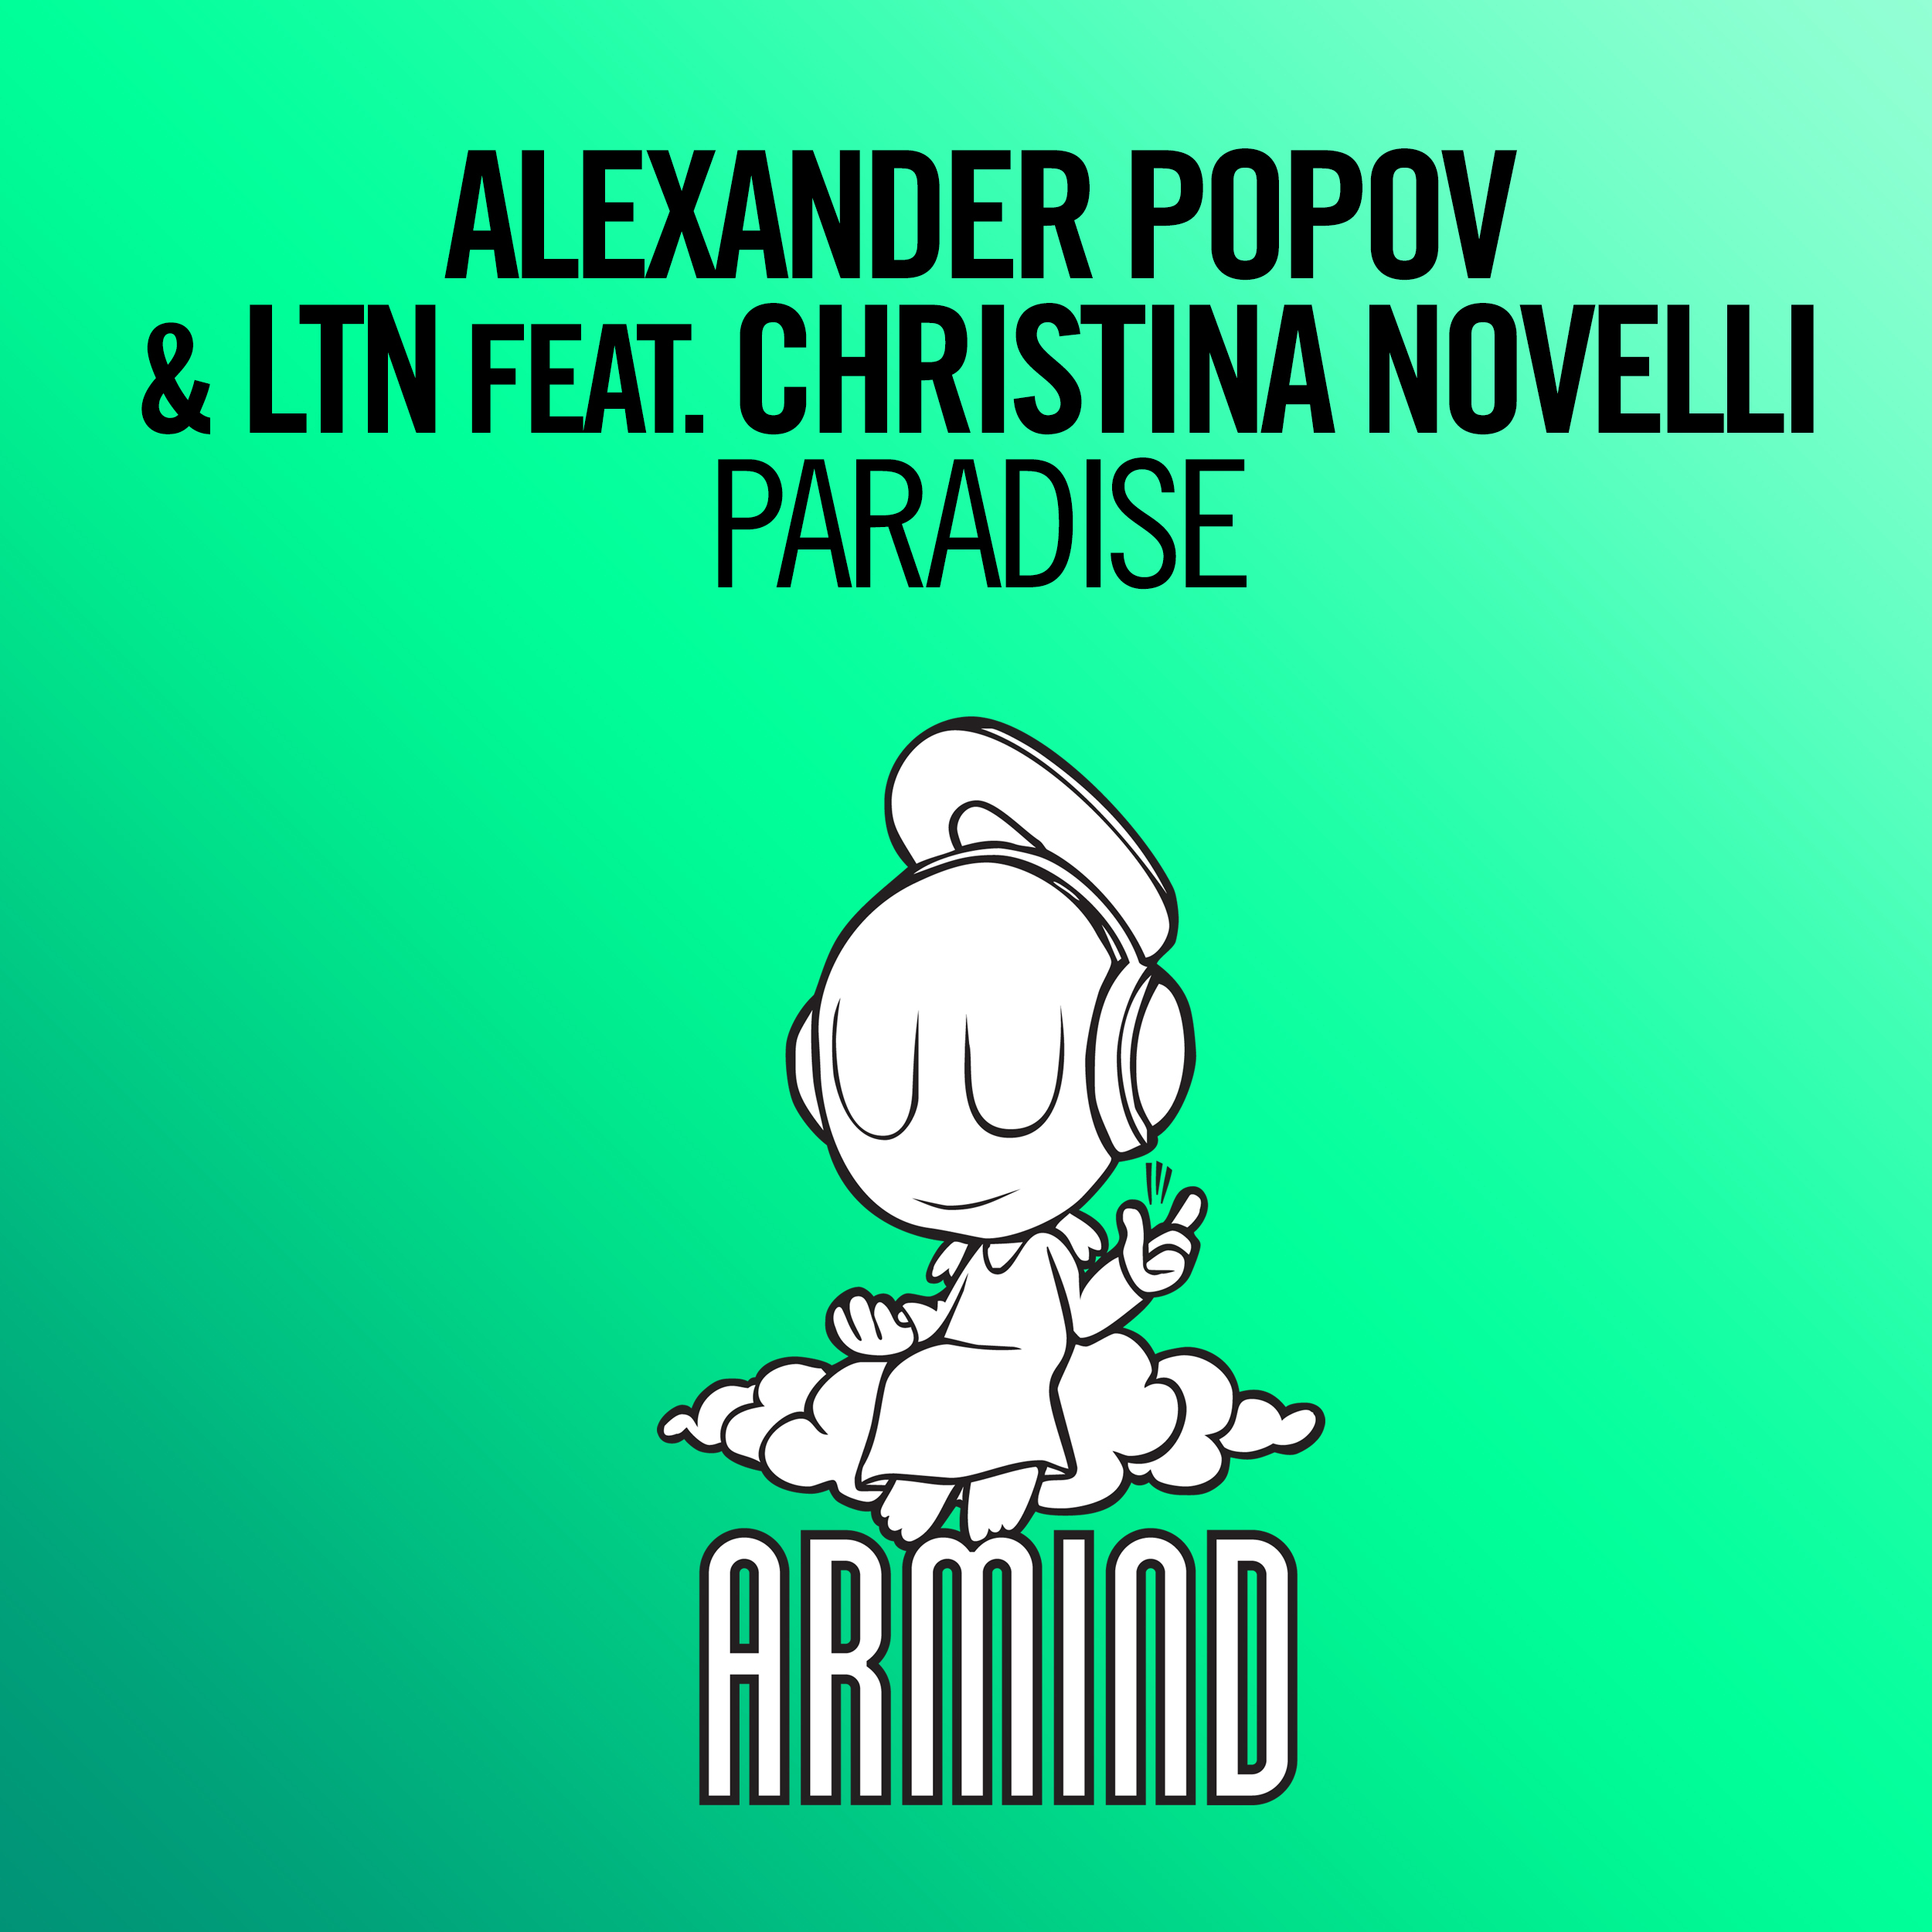 Paradise (Original Mix)